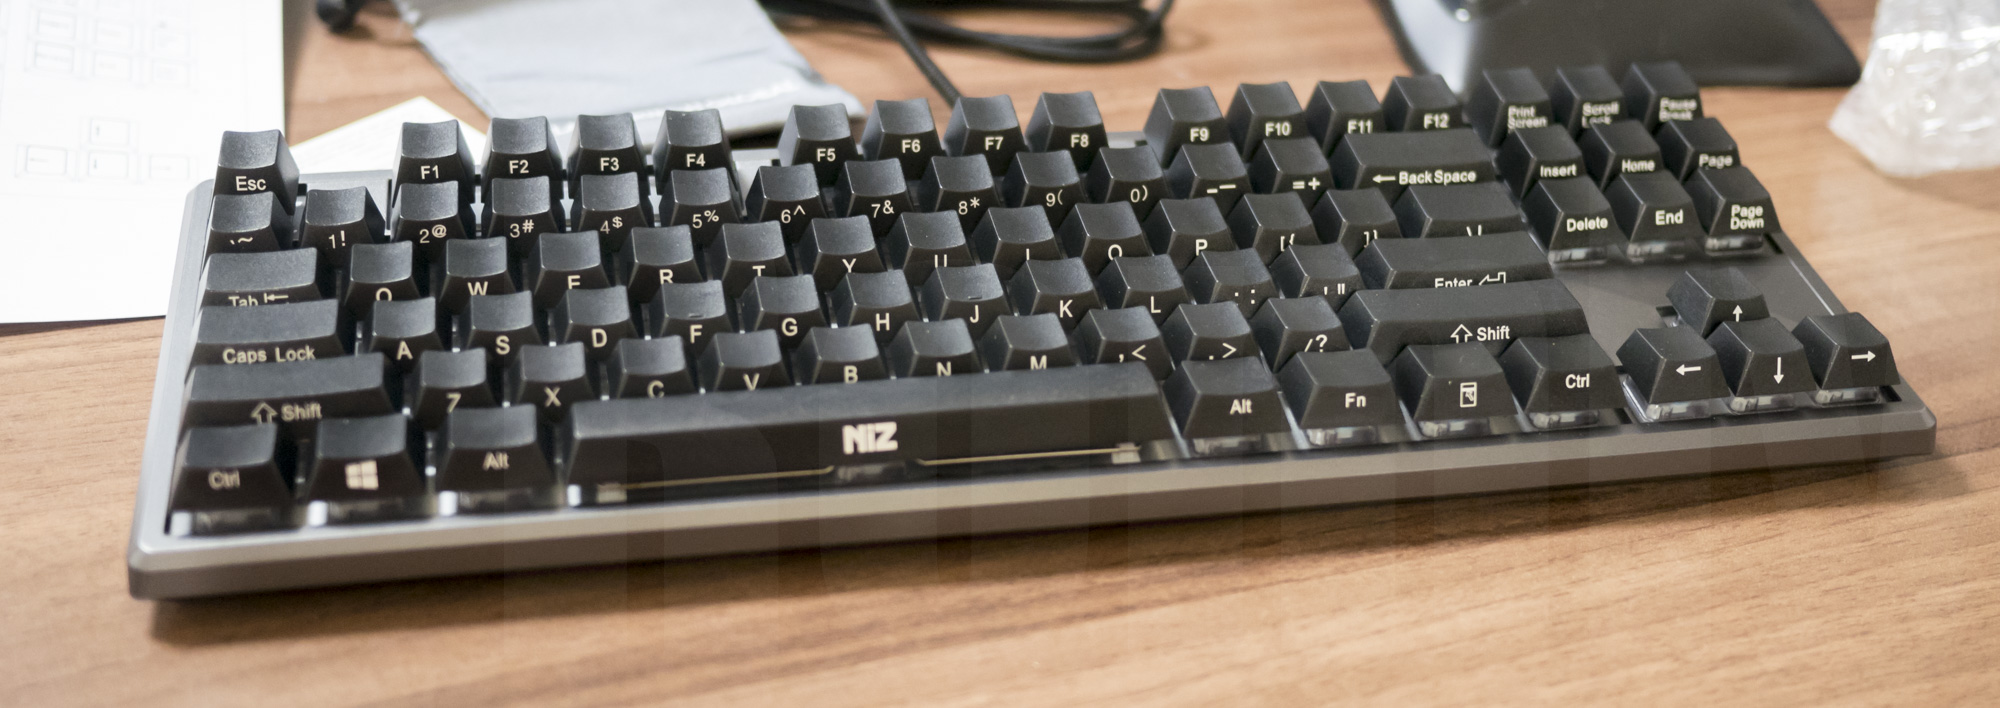 NiZ plum keyboard